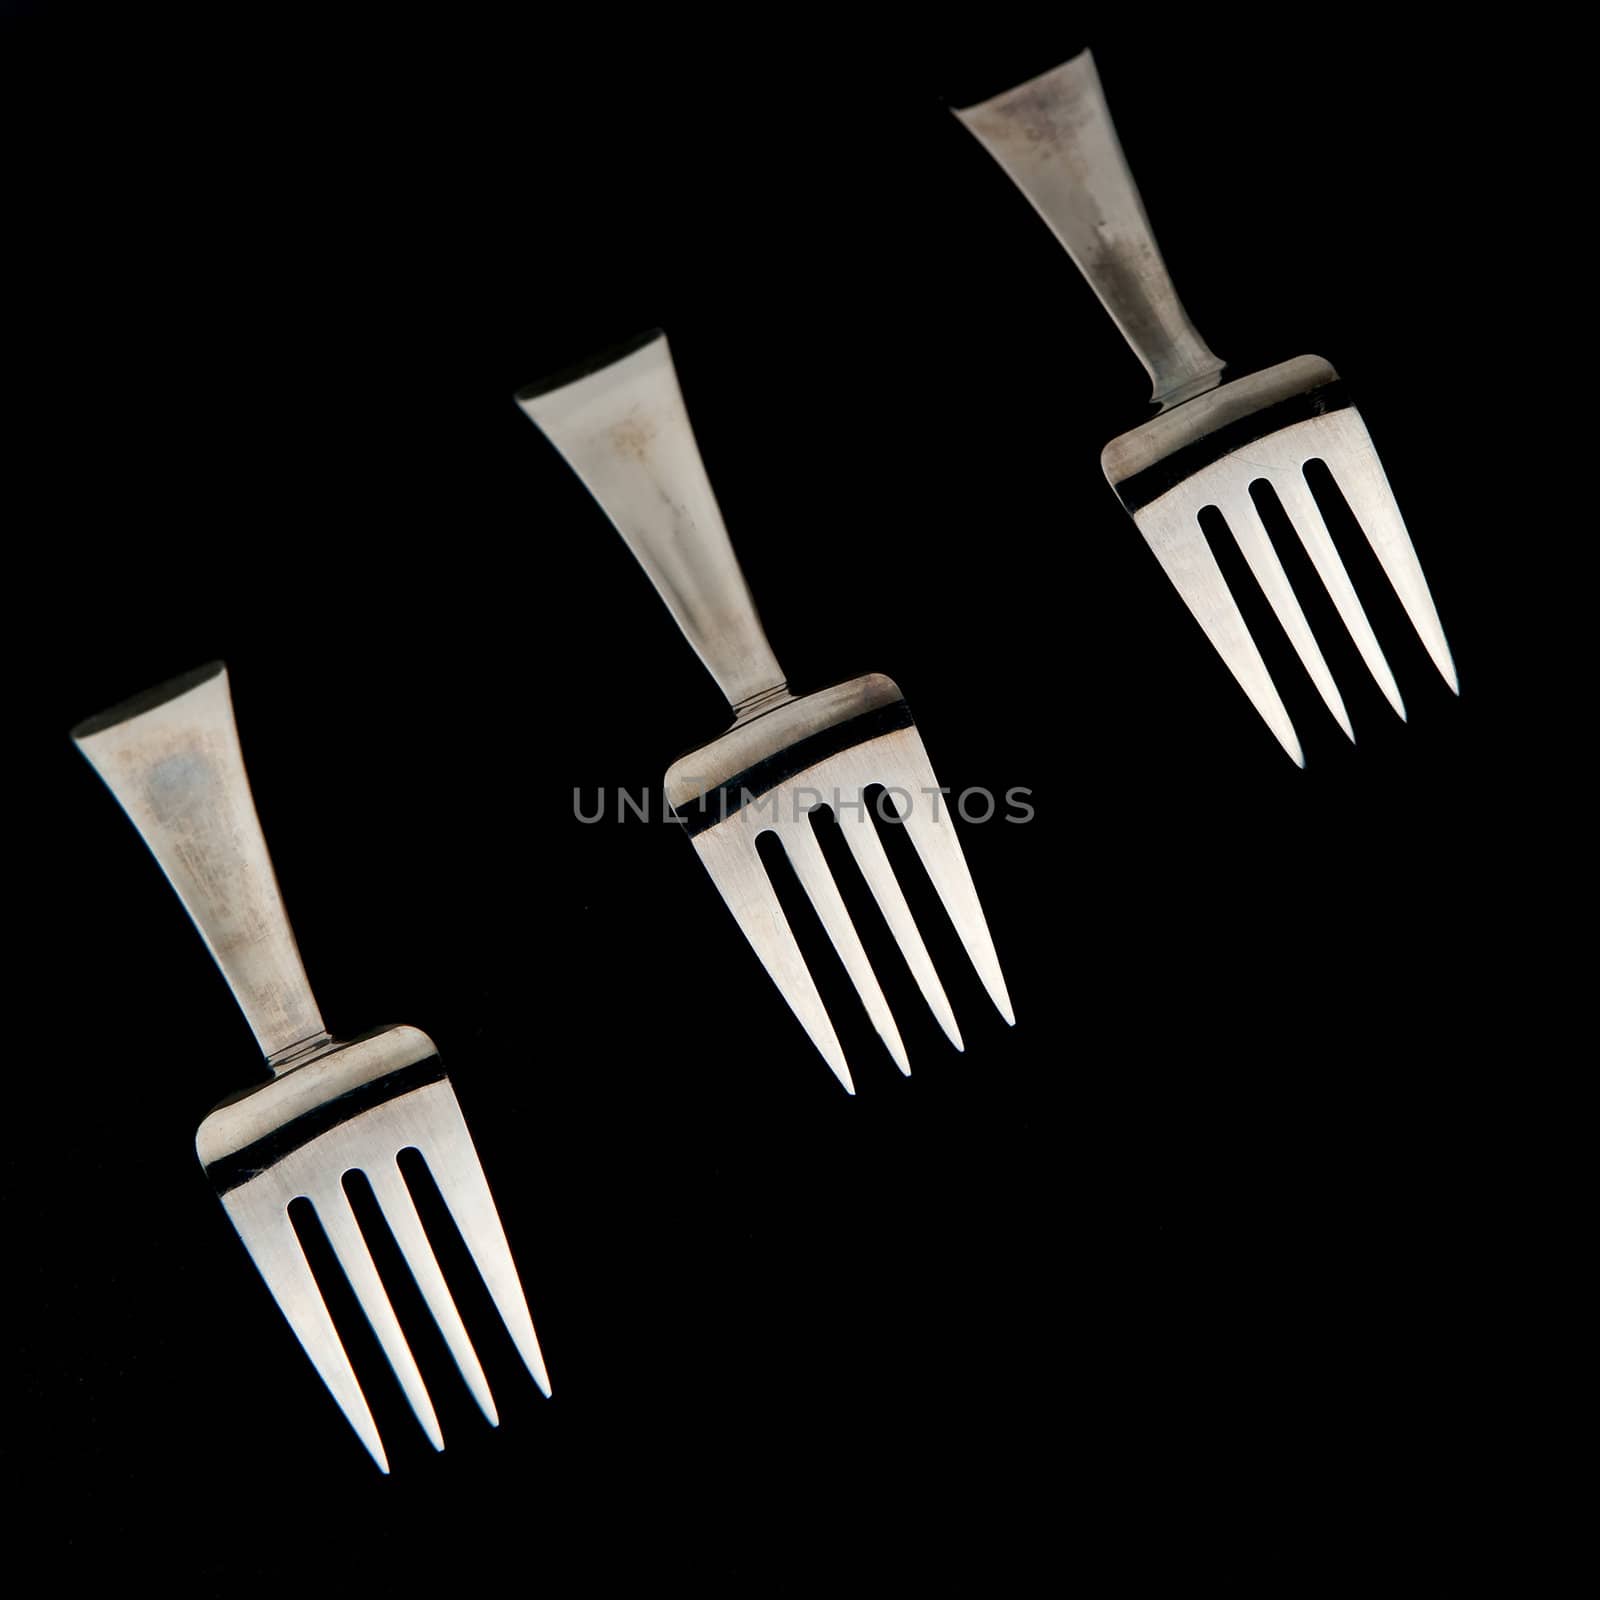 Five forks against black background. Cover set